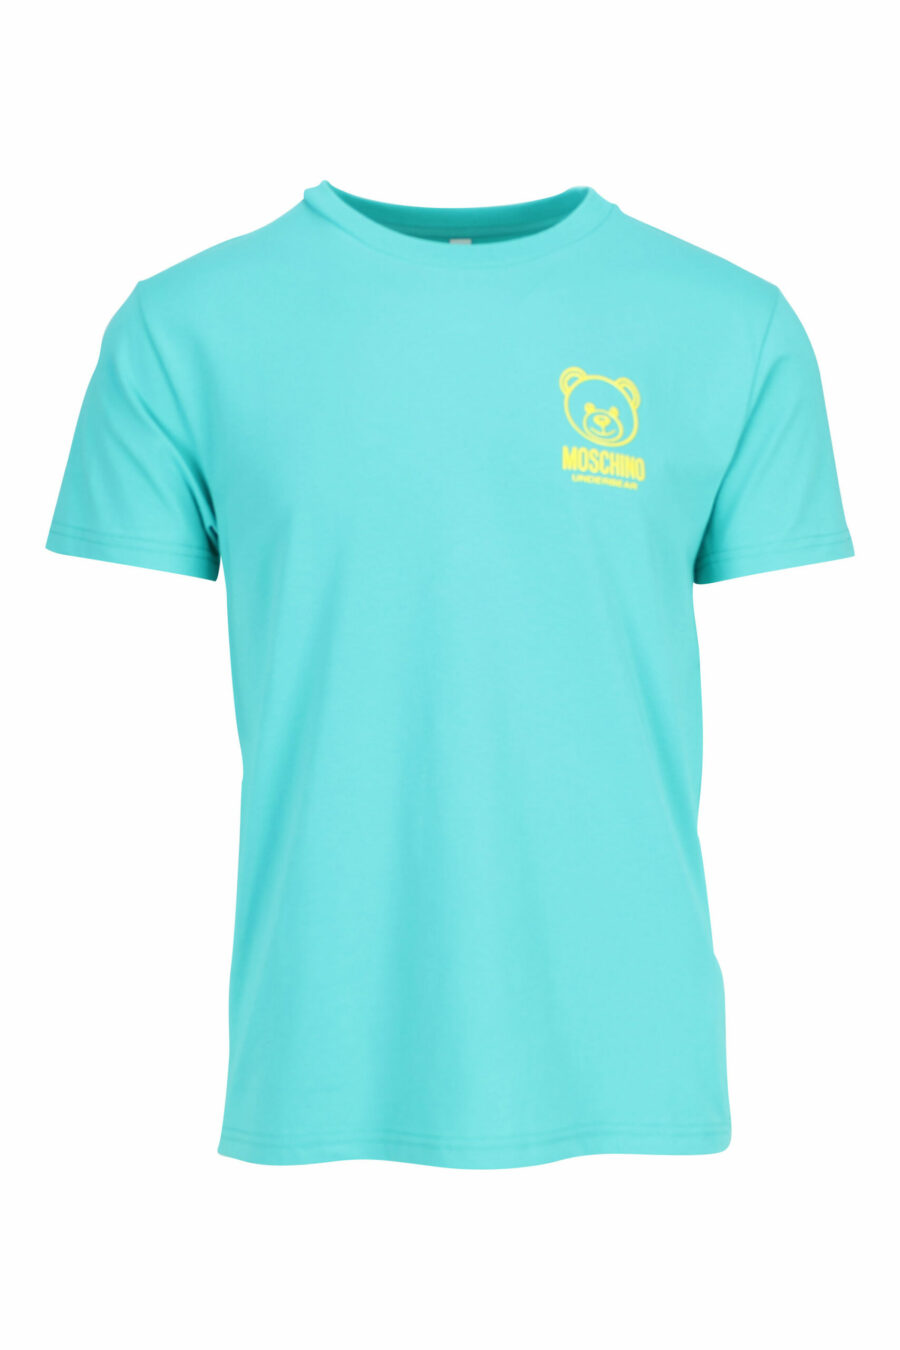 T-shirt verde menta com minilogo do urso "underbear" em borracha amarela - 667113602684